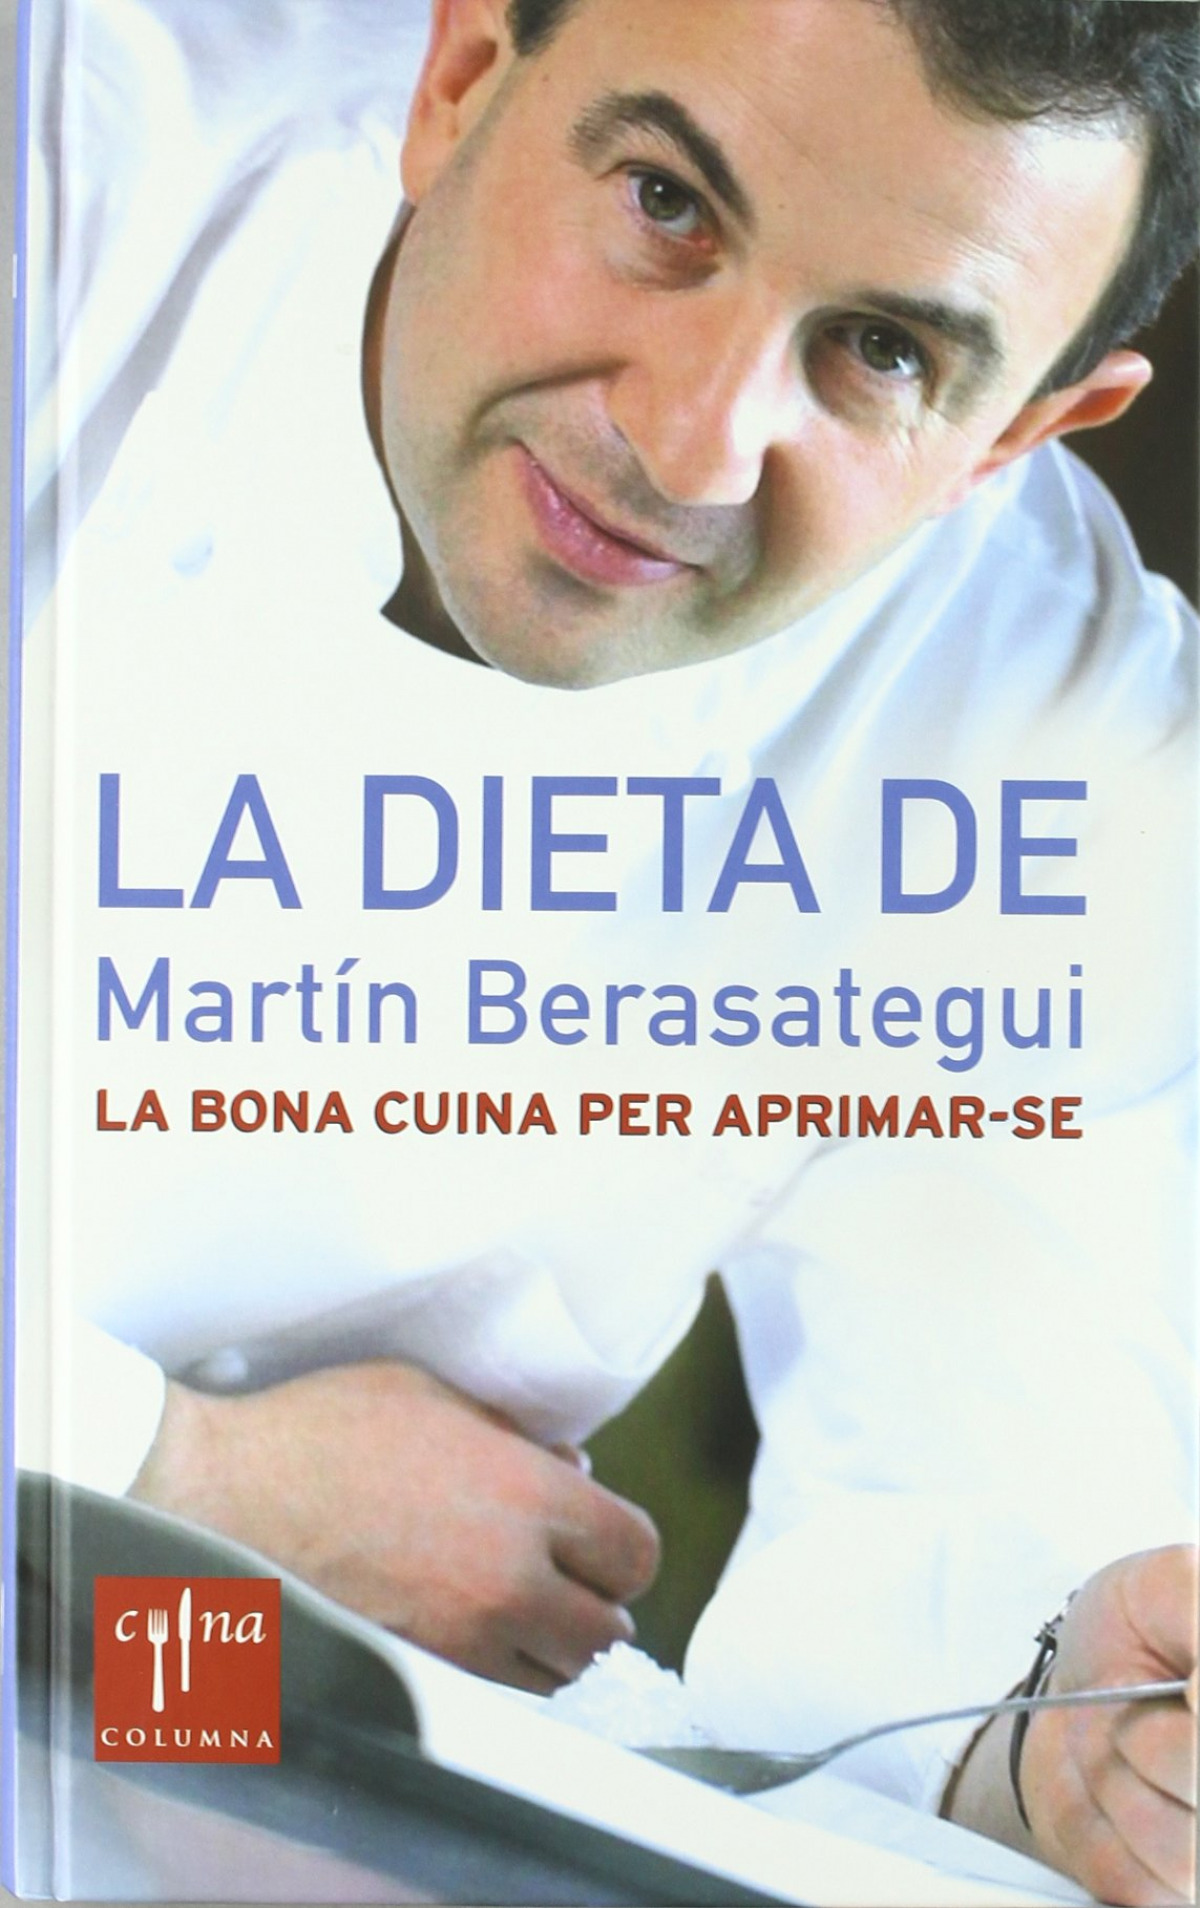 La dieta de Martín Berasategui - Martín Berasategui